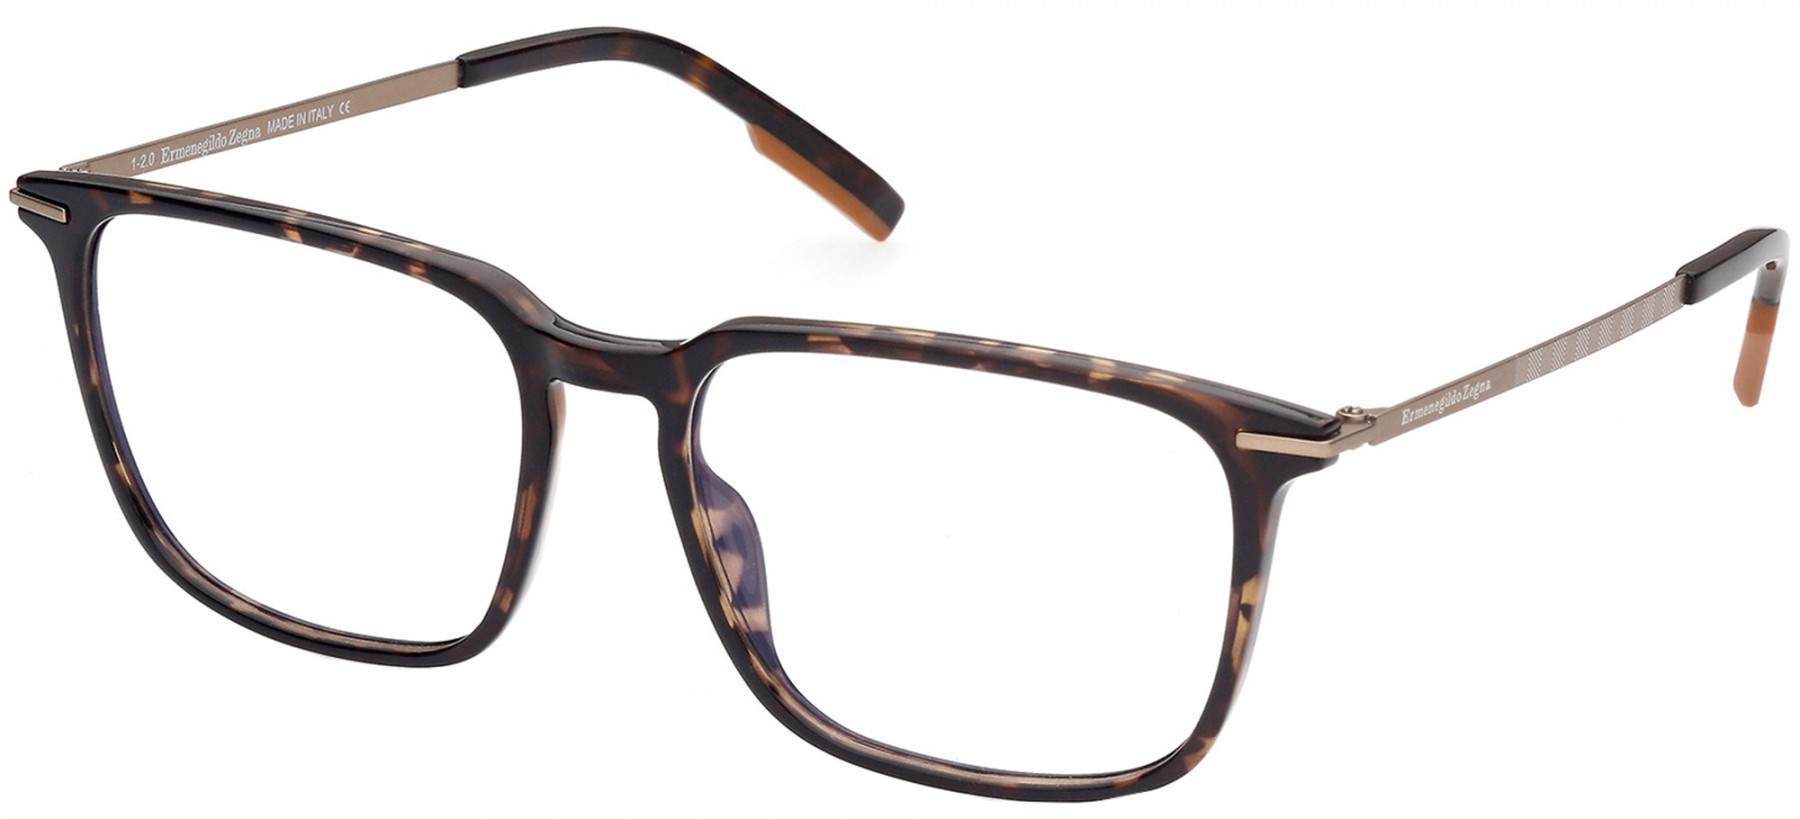 Ermenegildo Zegna 5216 052 - Oculos de Grau